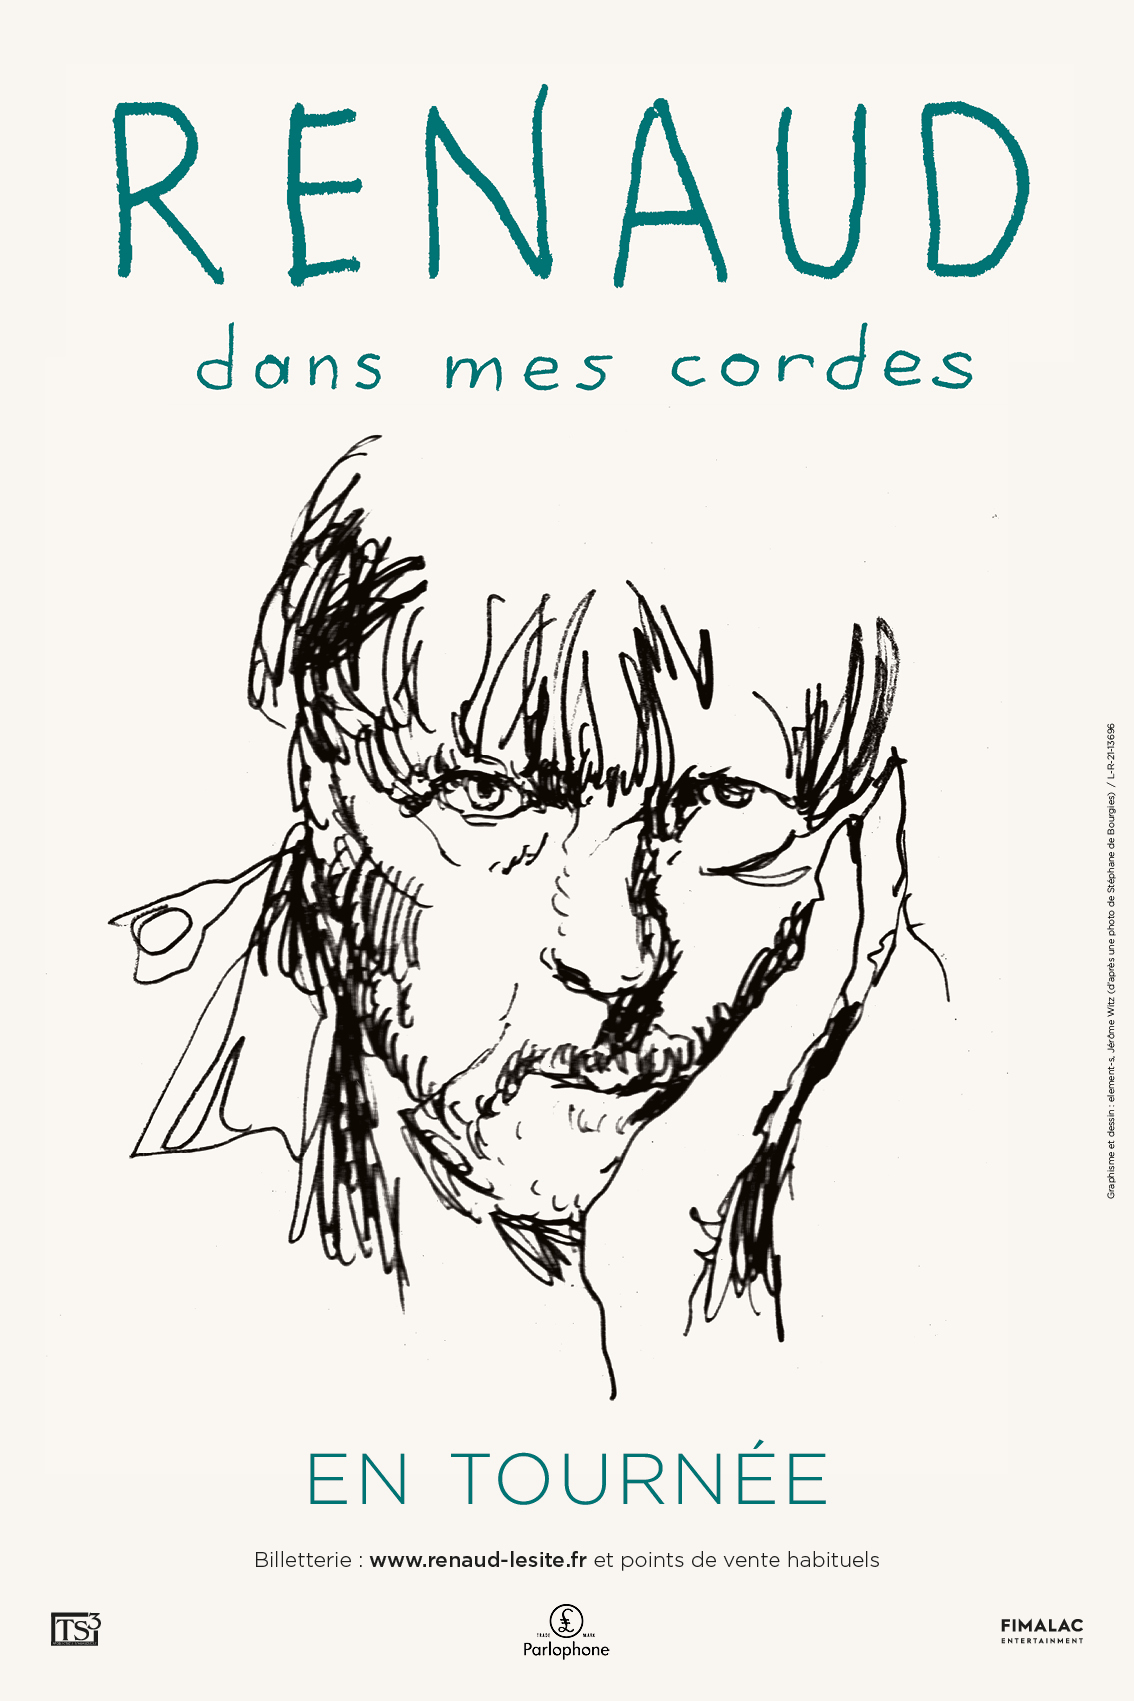 Renaud revisite son répertoire en symphonique avec 'Dans mes cordes', son  20ème album